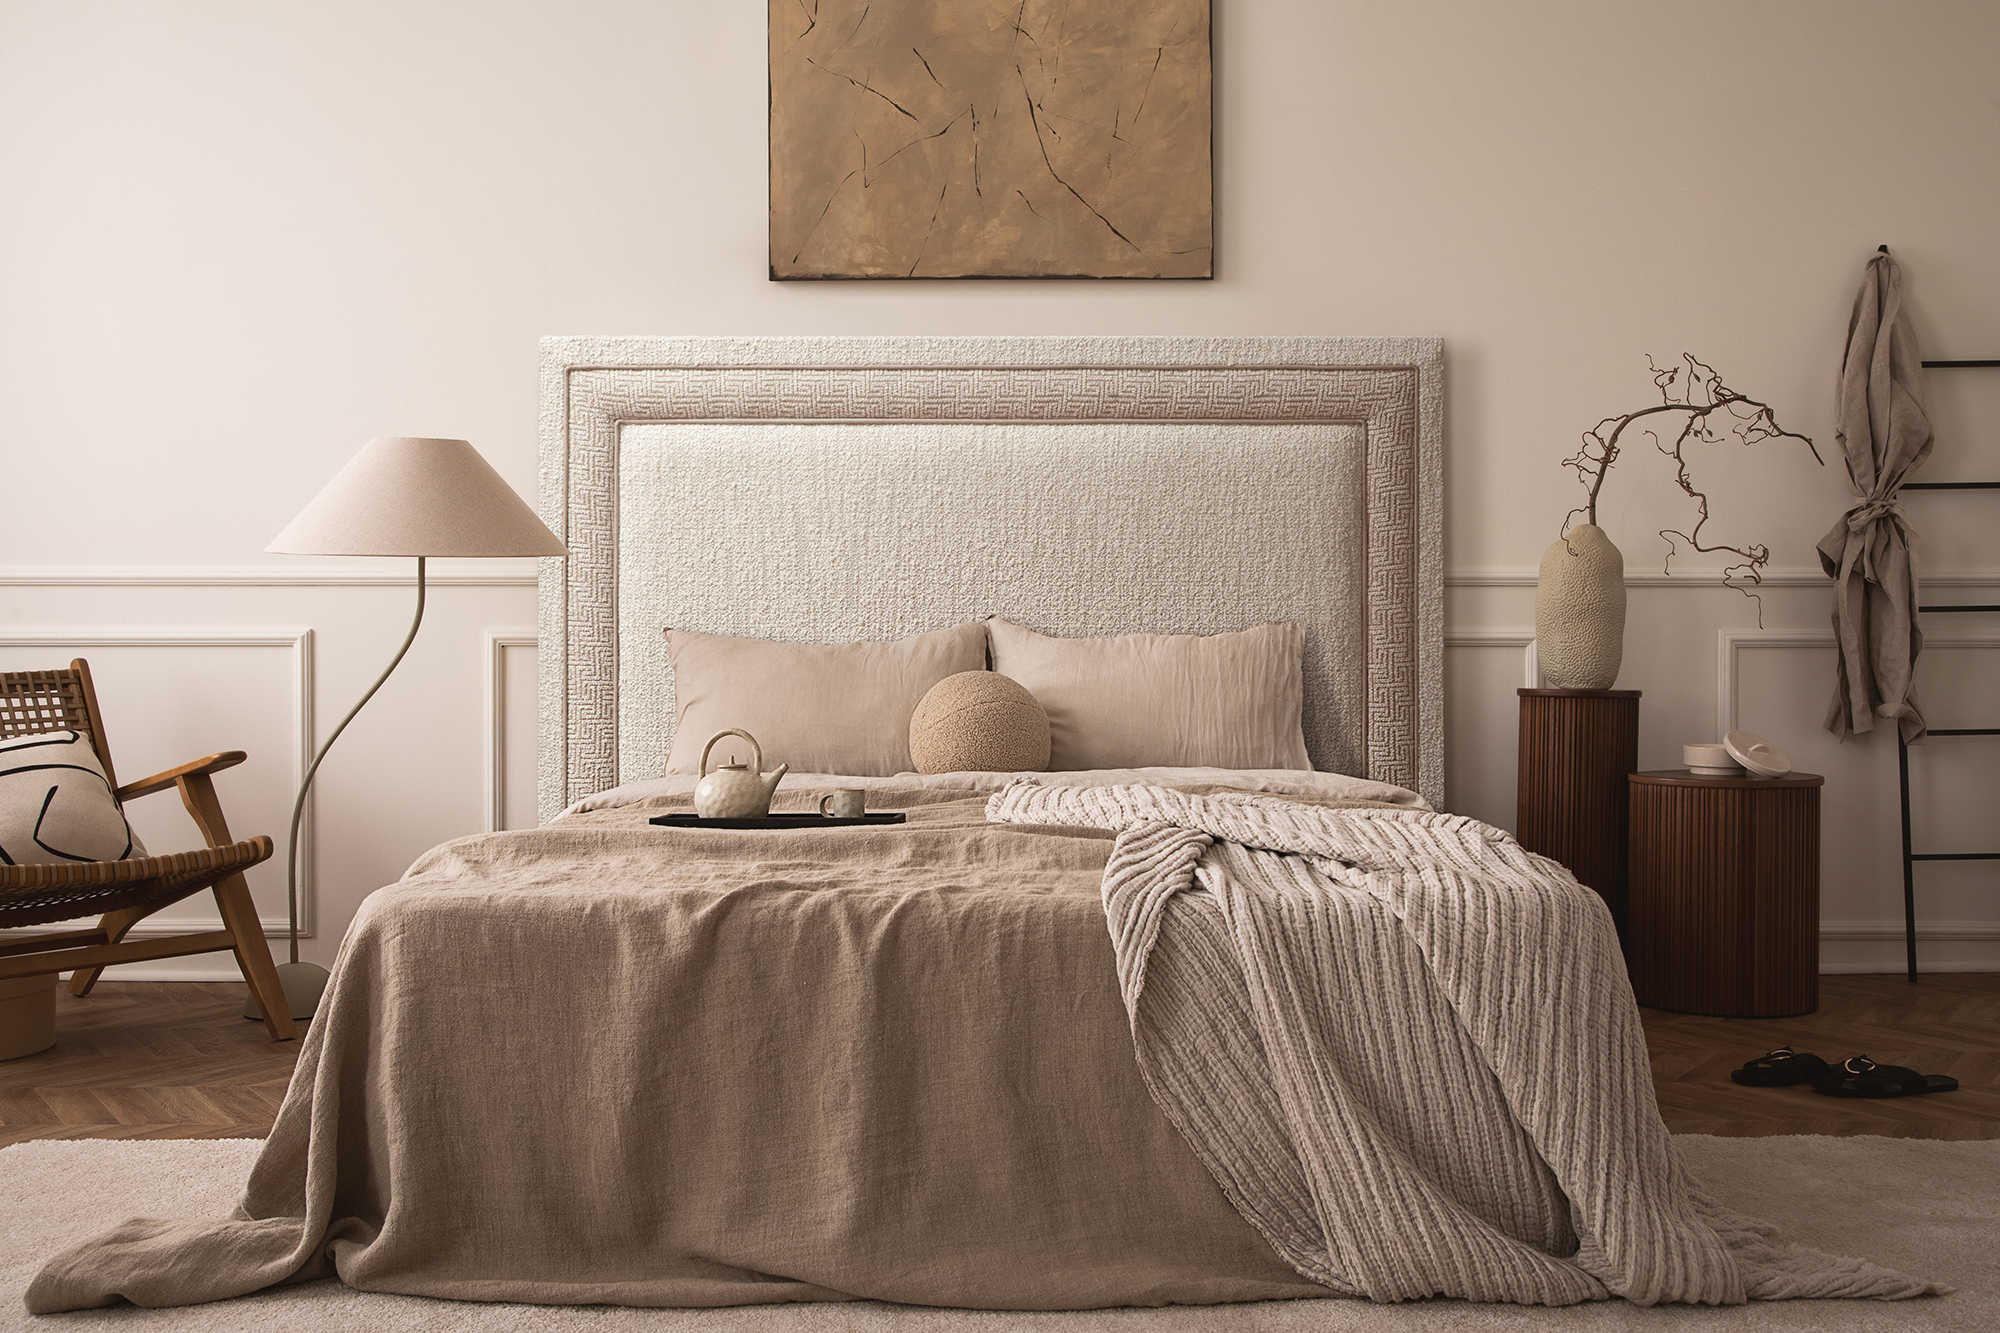 Ambiente de dormitorio elegante de estilo Boho. Aparece una cama, un cabecero tapizado en tela Boucle, una lámpara, una descalzadora, unas mesitas de noche, un jarrón y un cuadro en la pared.